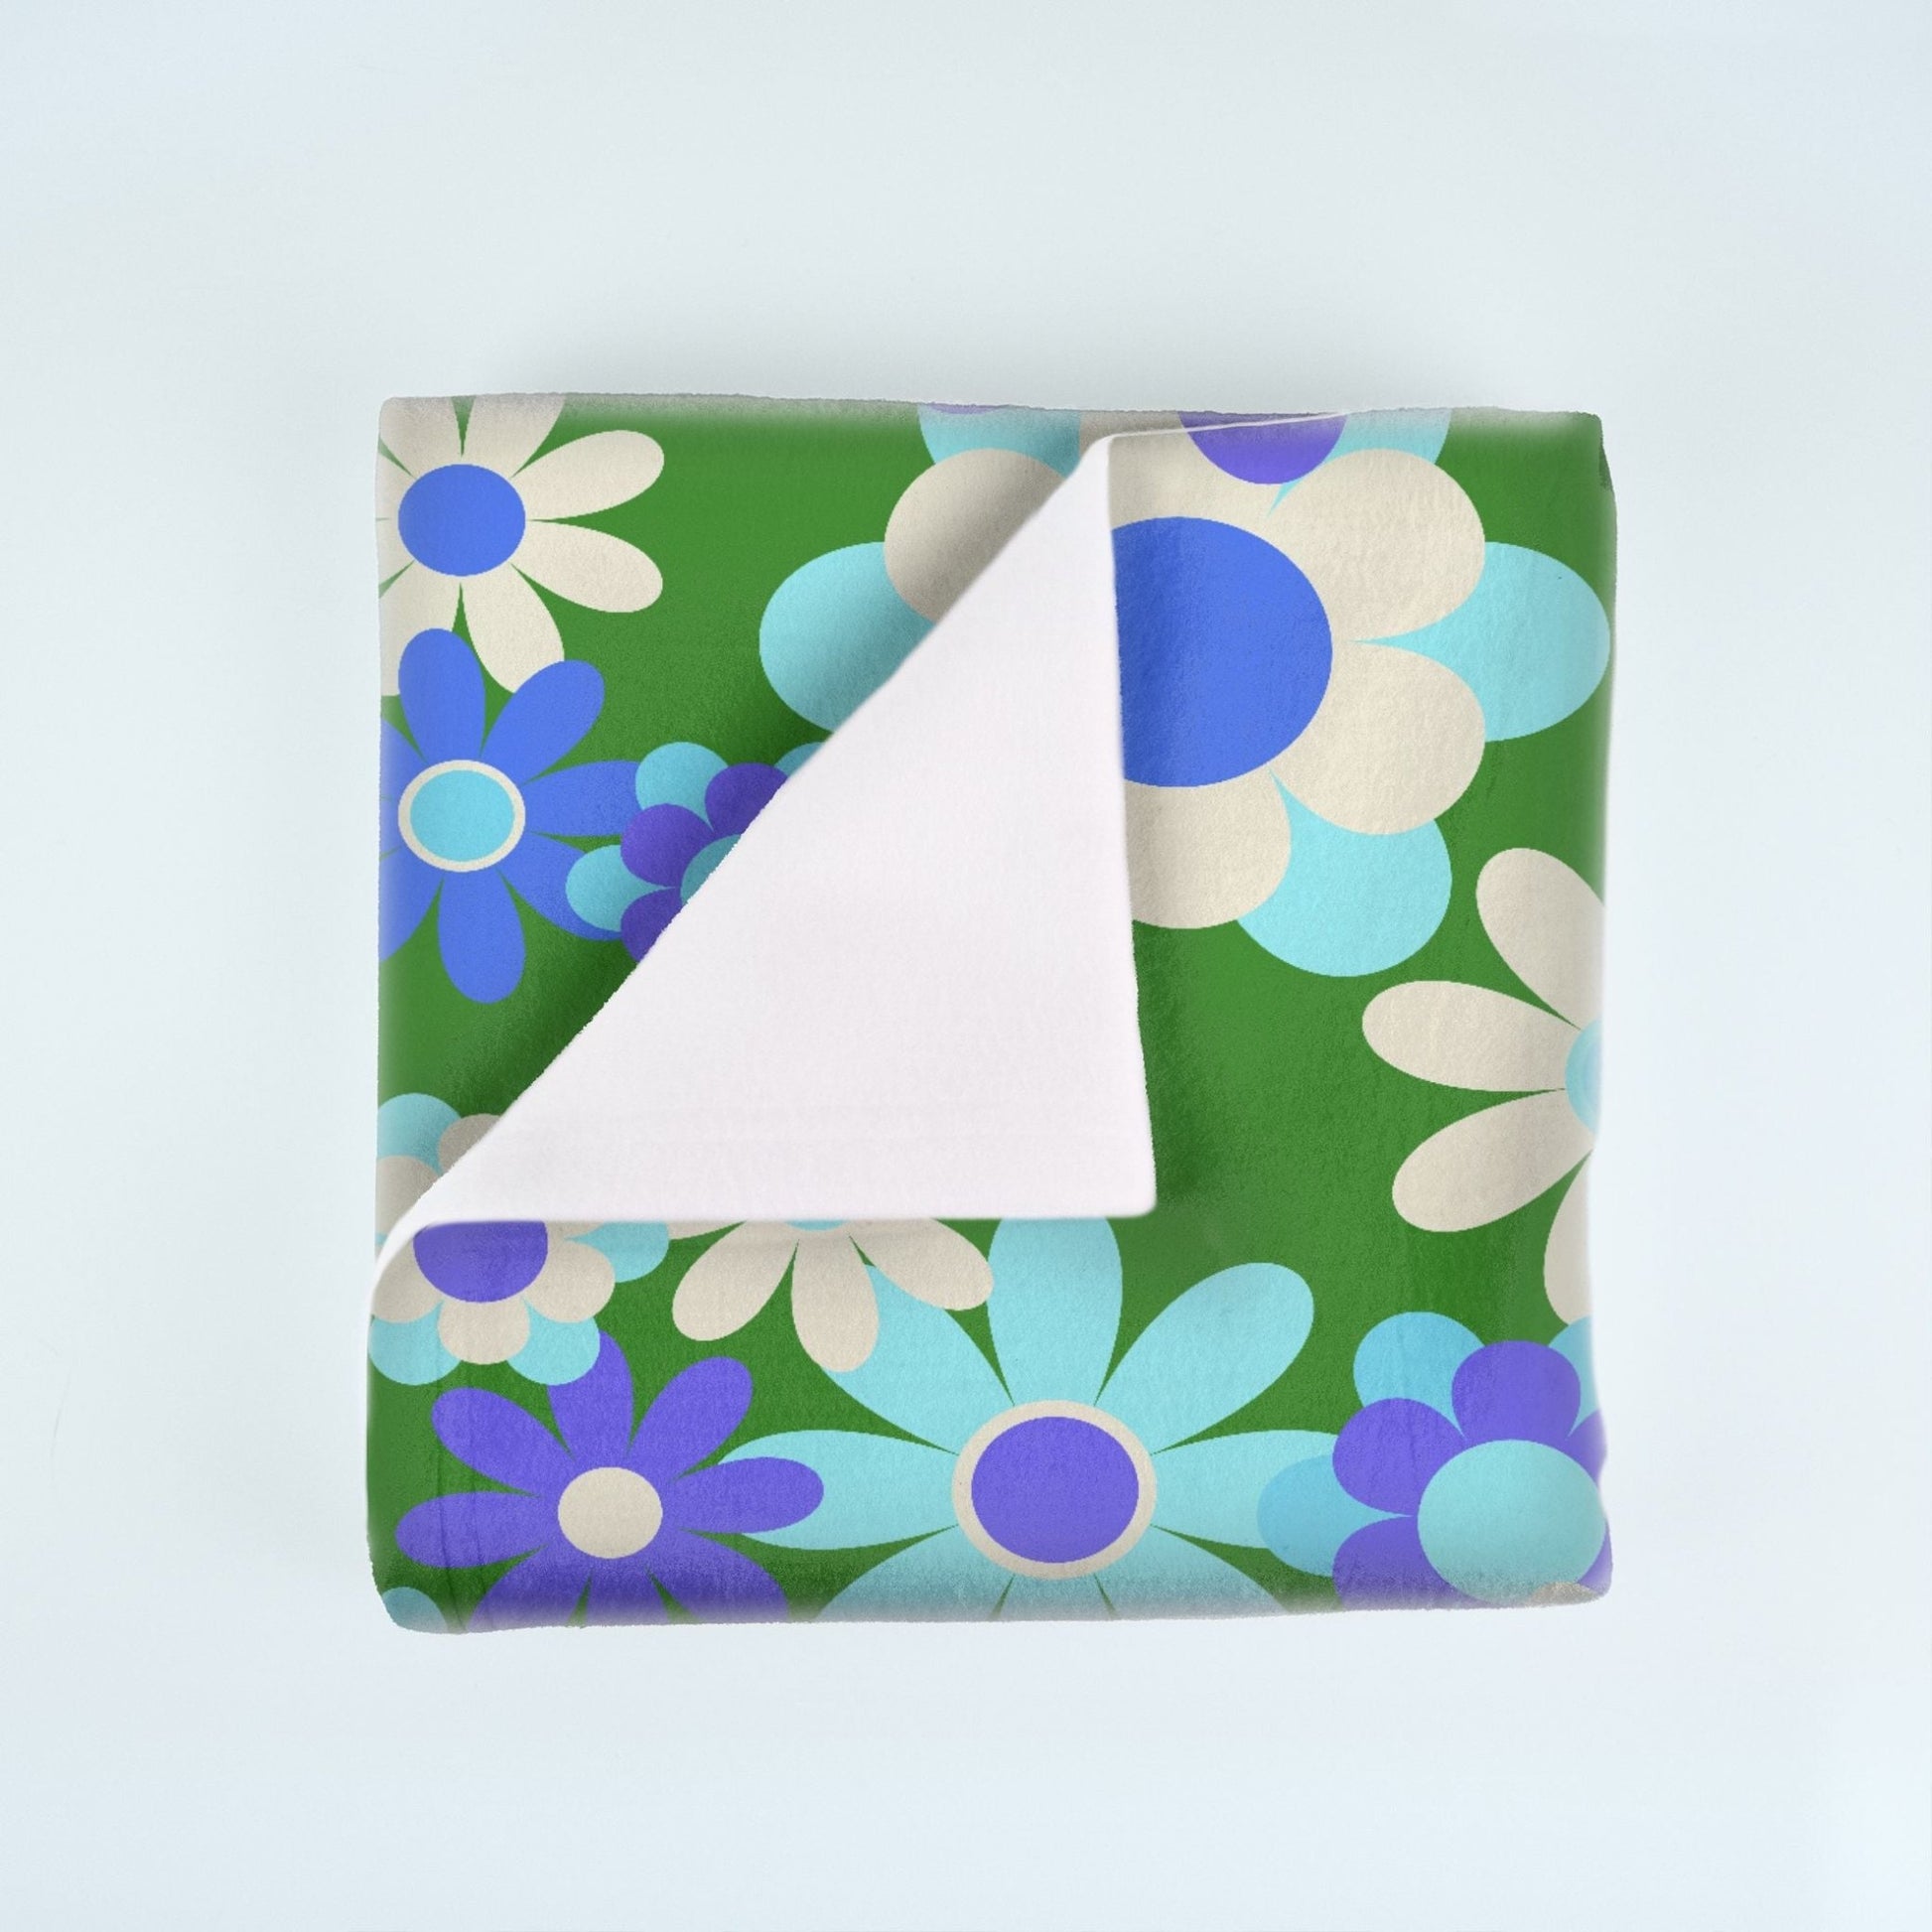 Blue & Purple Flowers on Green Soft Fleece Blanket - 50" x 60" - Gifternaut